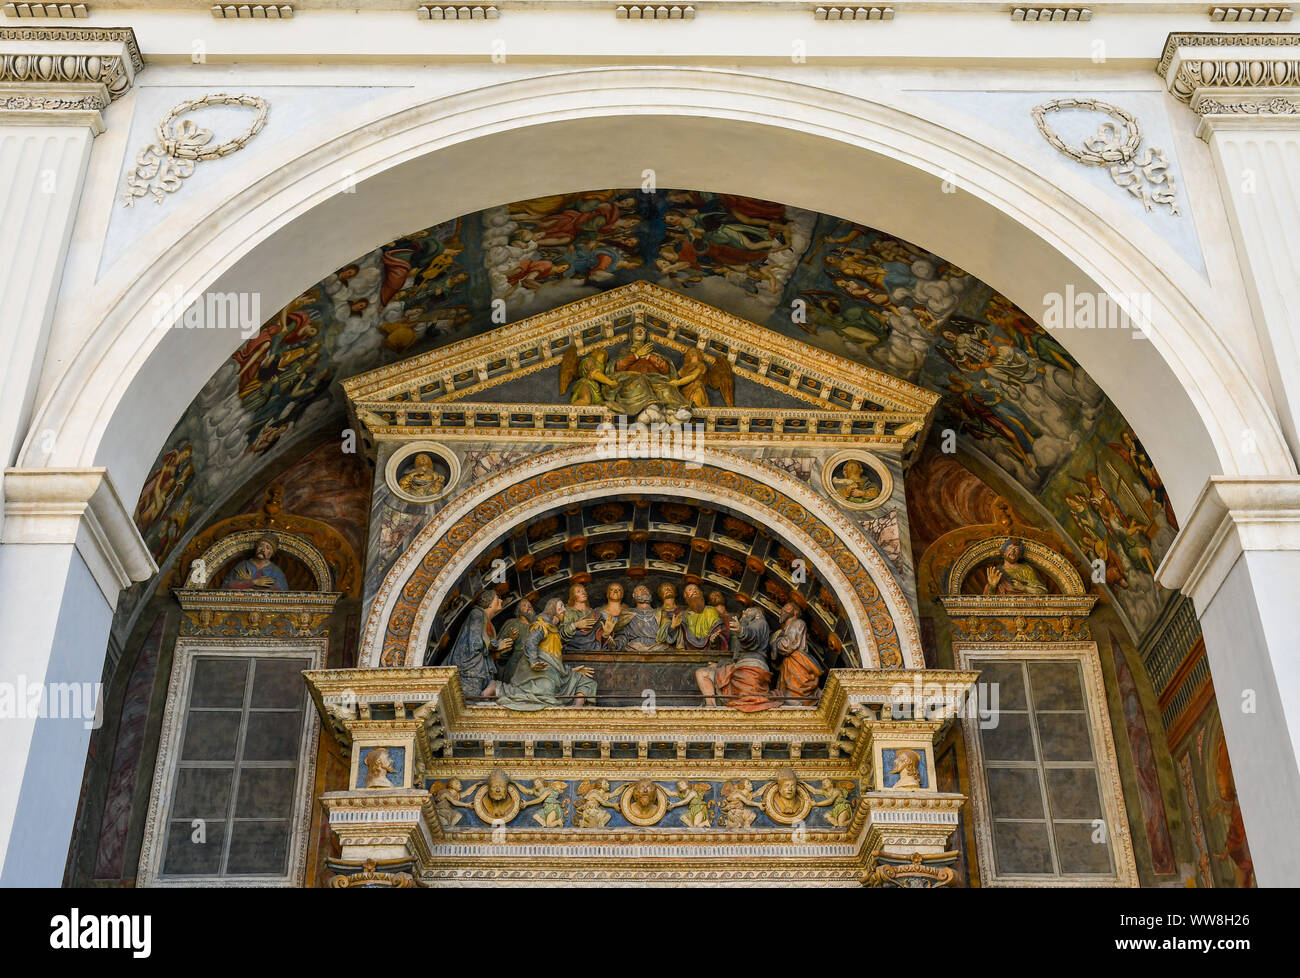 Detalle de la fachada de la Catedral de Aosta con un grupo de esculturas en terracota de tamaño real que representa a la asunción de la Virgen María, Italia Foto de stock